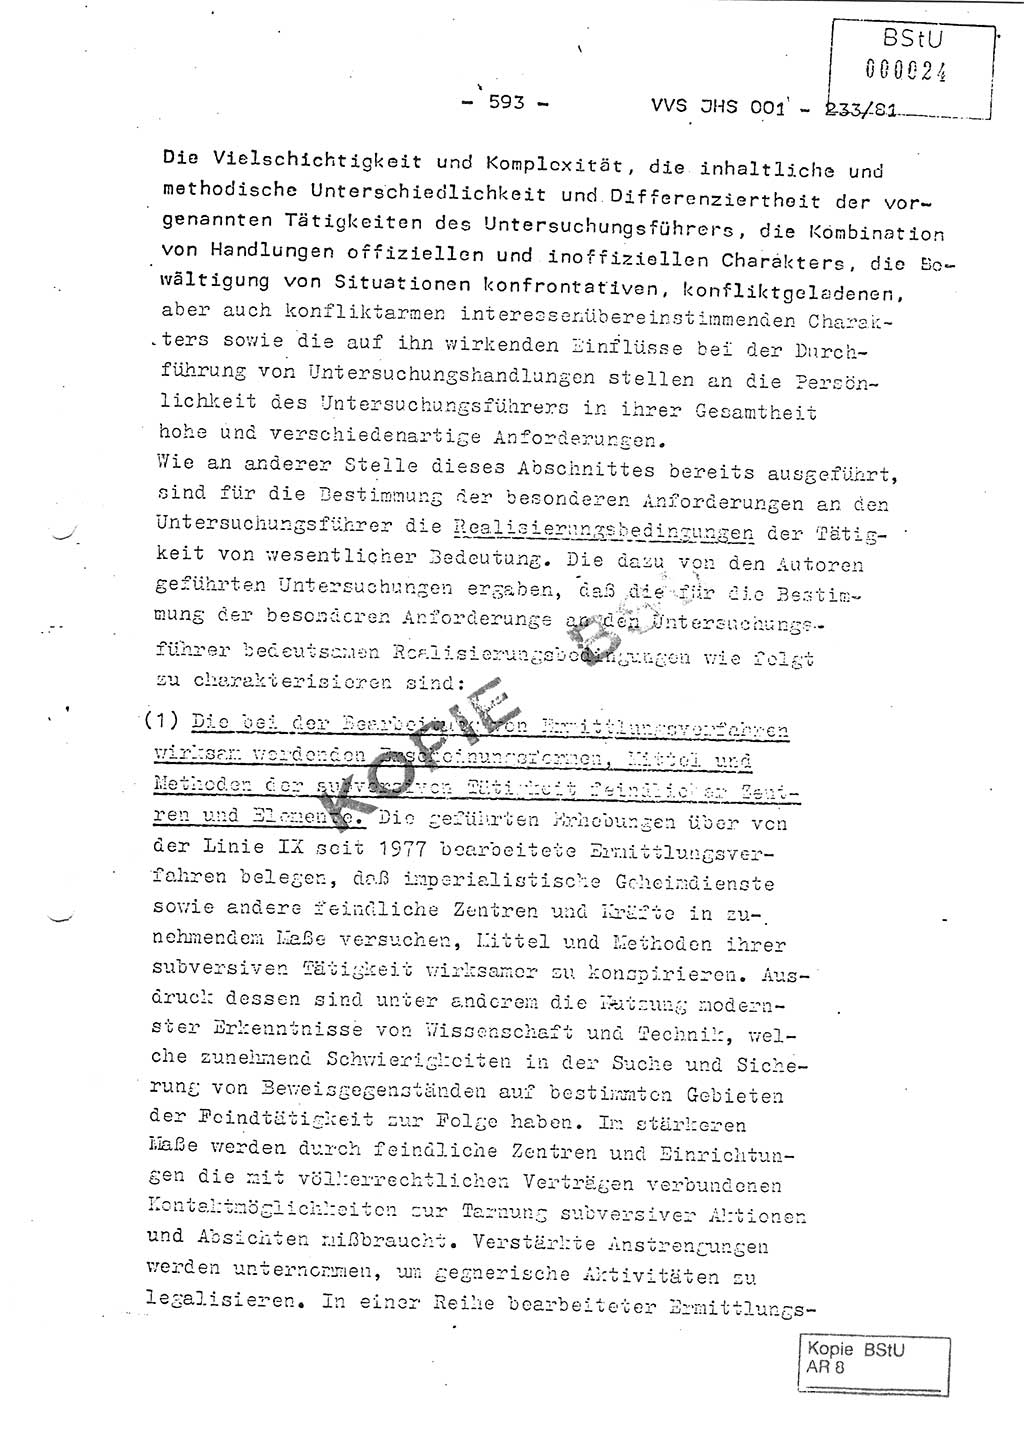 Dissertation Oberstleutnant Horst Zank (JHS), Oberstleutnant Dr. Karl-Heinz Knoblauch (JHS), Oberstleutnant Gustav-Adolf Kowalewski (HA Ⅸ), Oberstleutnant Wolfgang Plötner (HA Ⅸ), Ministerium für Staatssicherheit (MfS) [Deutsche Demokratische Republik (DDR)], Juristische Hochschule (JHS), Vertrauliche Verschlußsache (VVS) o001-233/81, Potsdam 1981, Blatt 593 (Diss. MfS DDR JHS VVS o001-233/81 1981, Bl. 593)